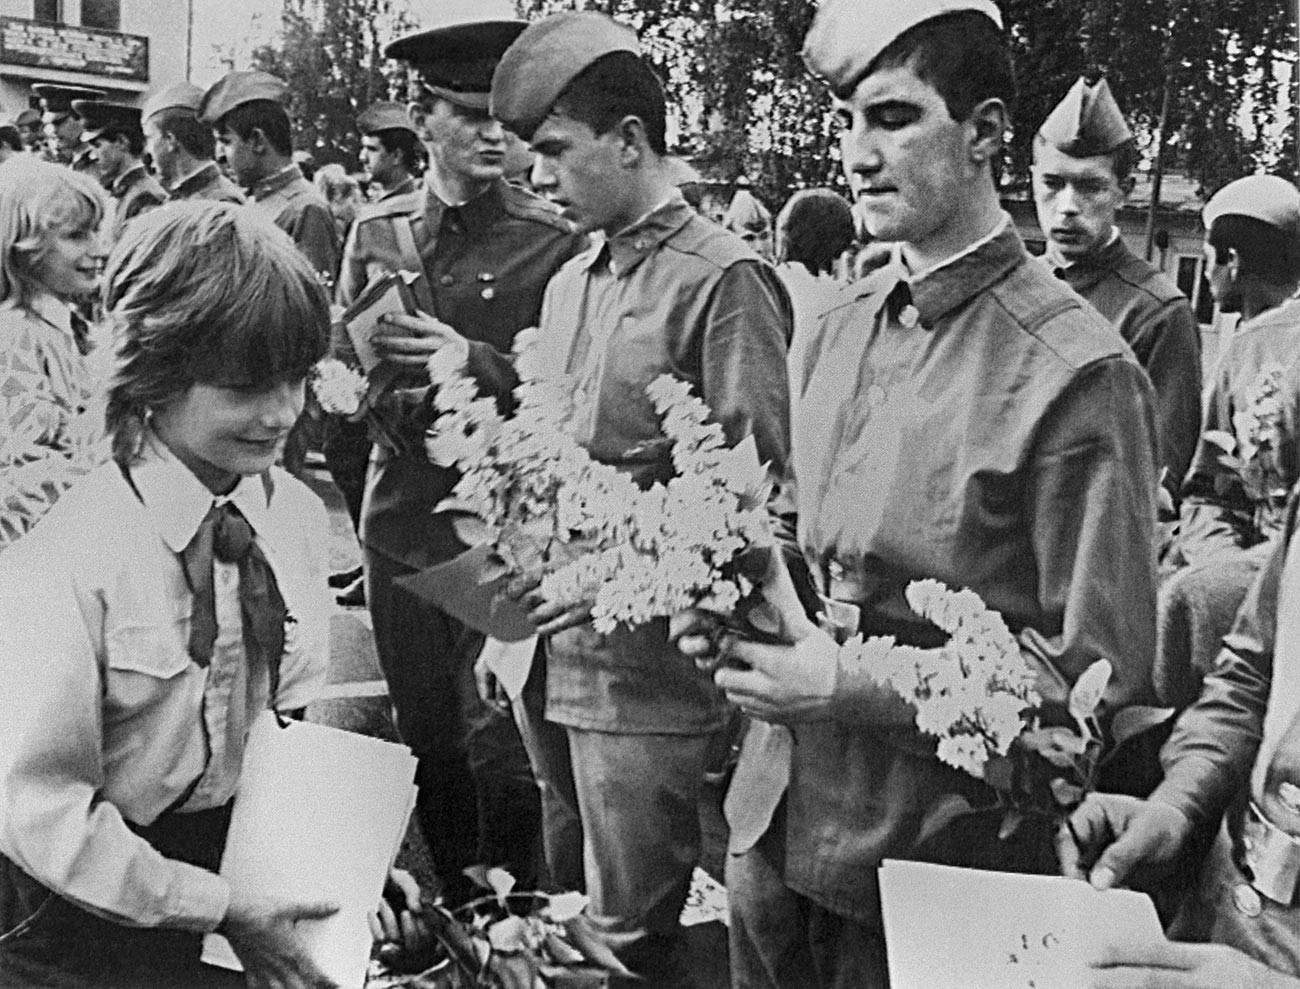 Retrait des troupes soviétiques de Tchécoslovaquie, 1989. Les pionniers d'une école locale font leurs adieux chaleureux aux soldats soviétiques.